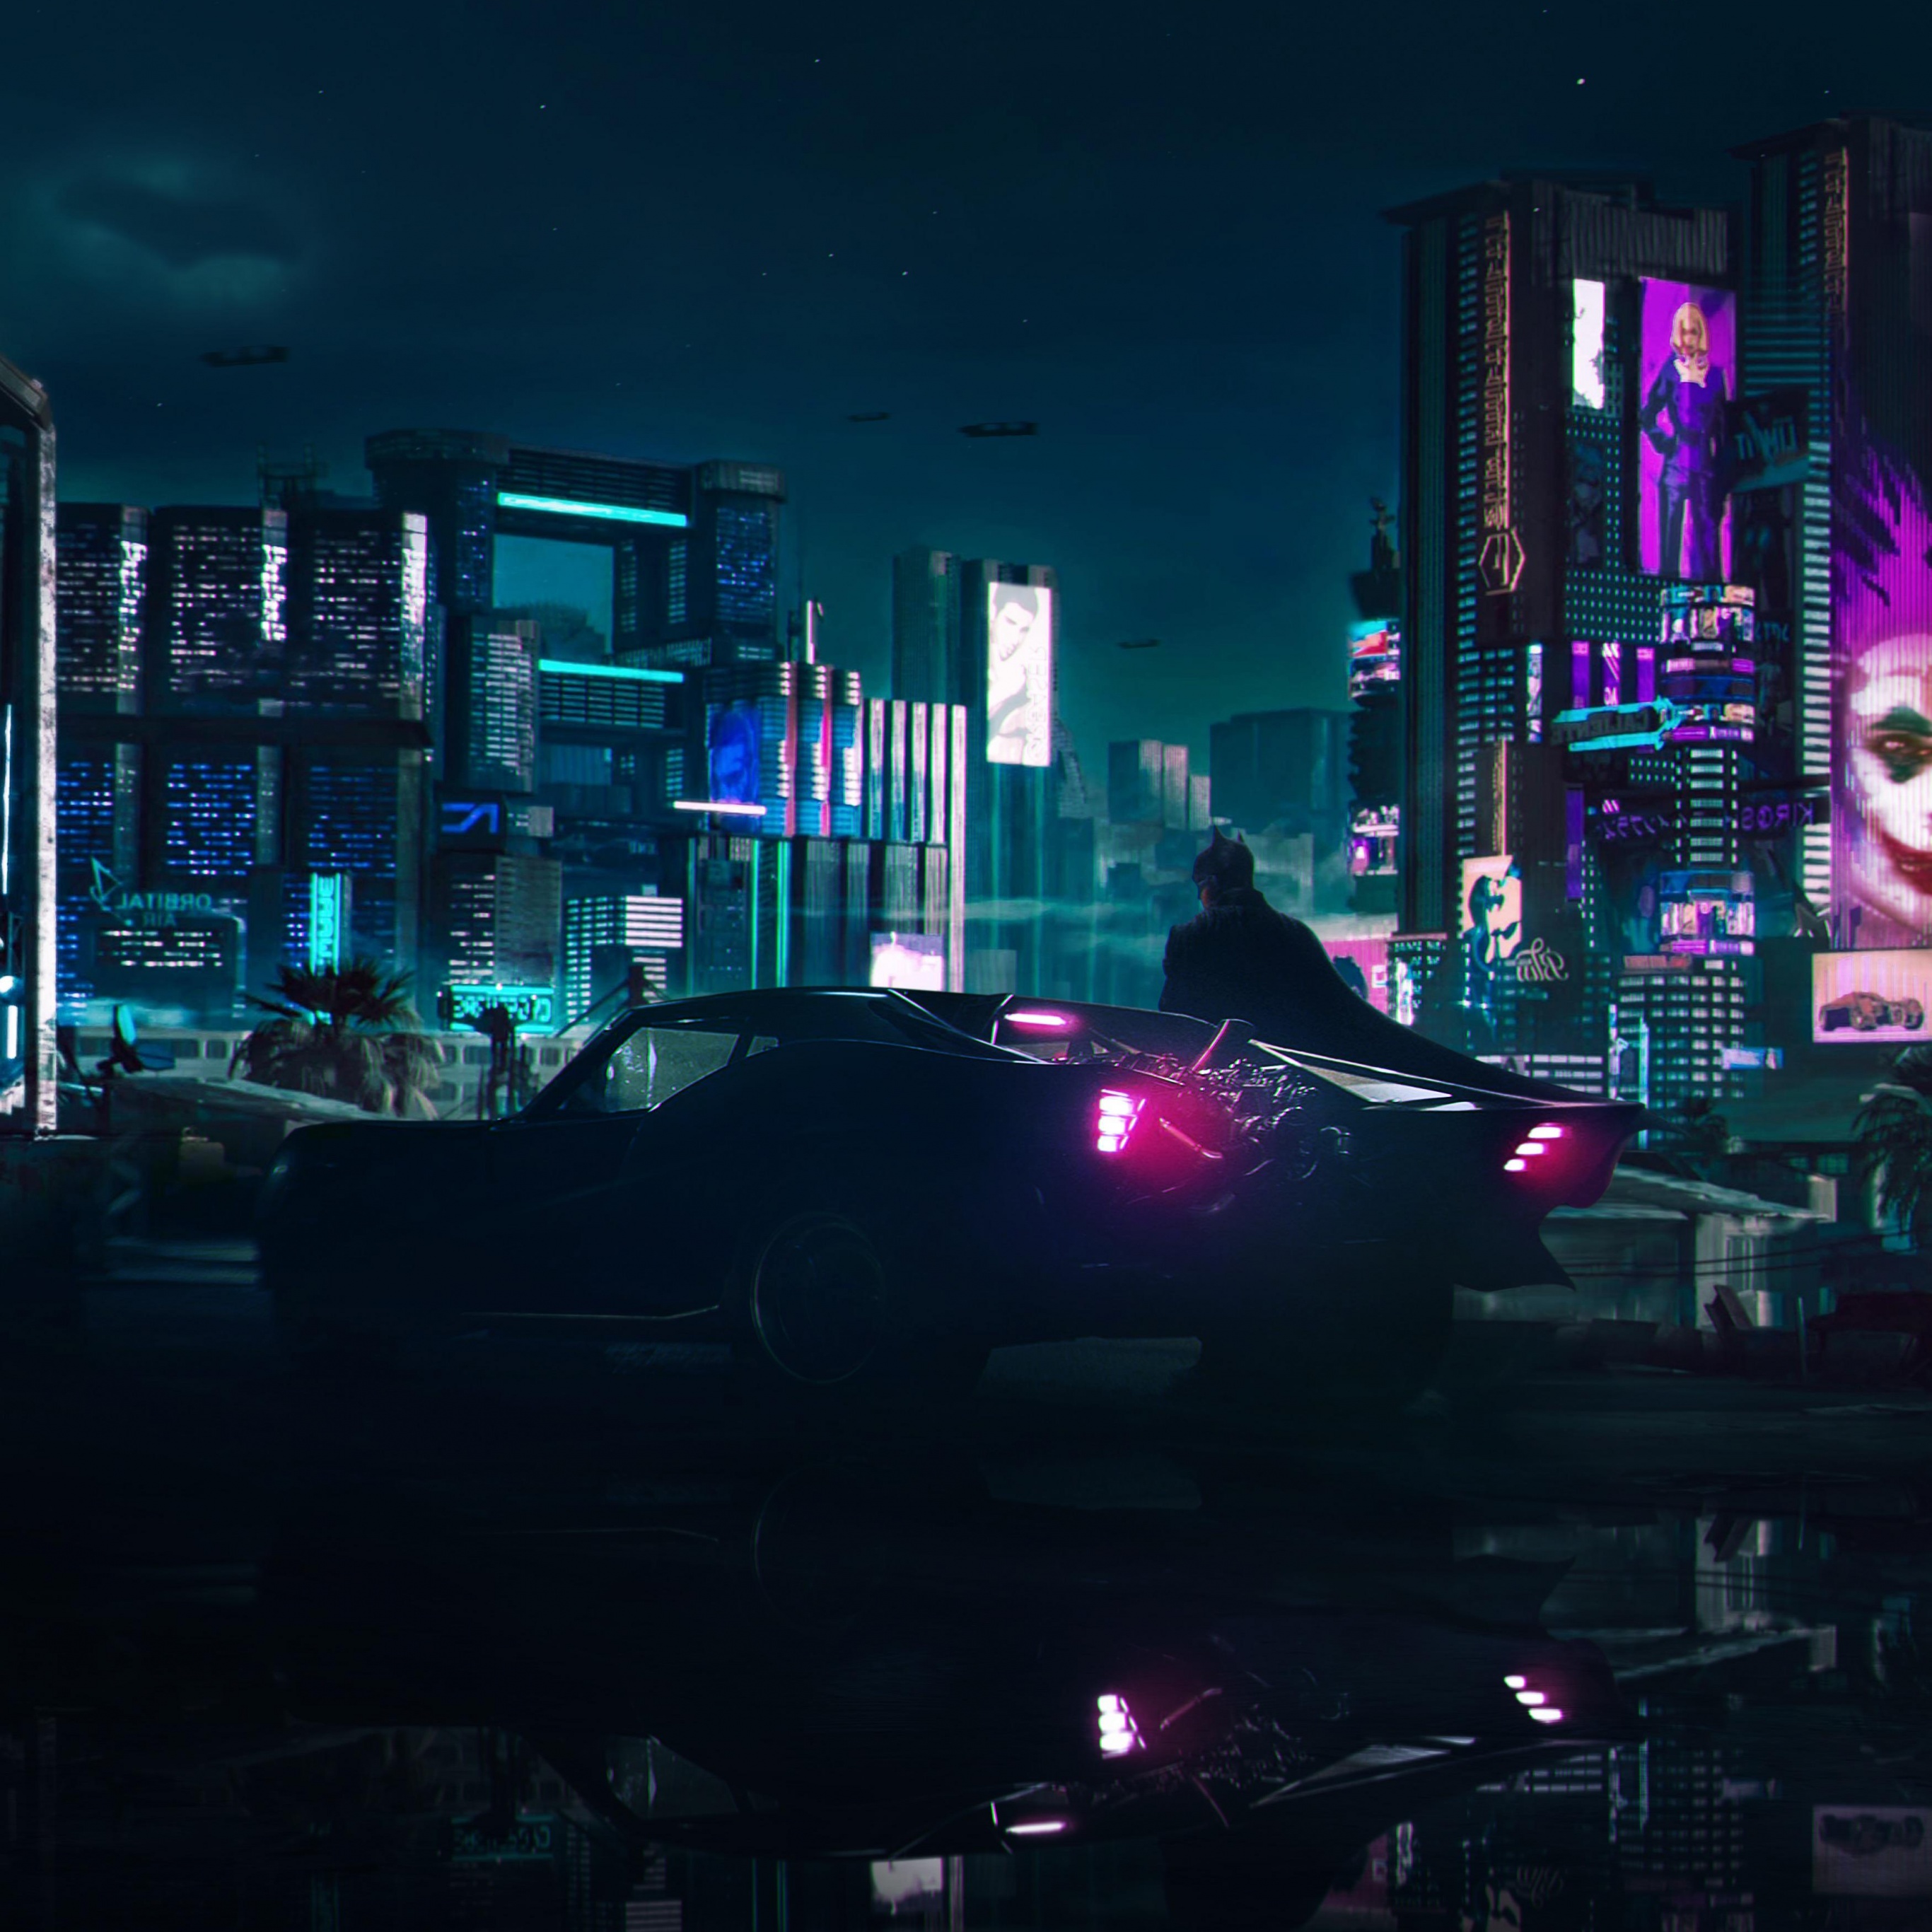 Night city текст cyberpunk фото 92